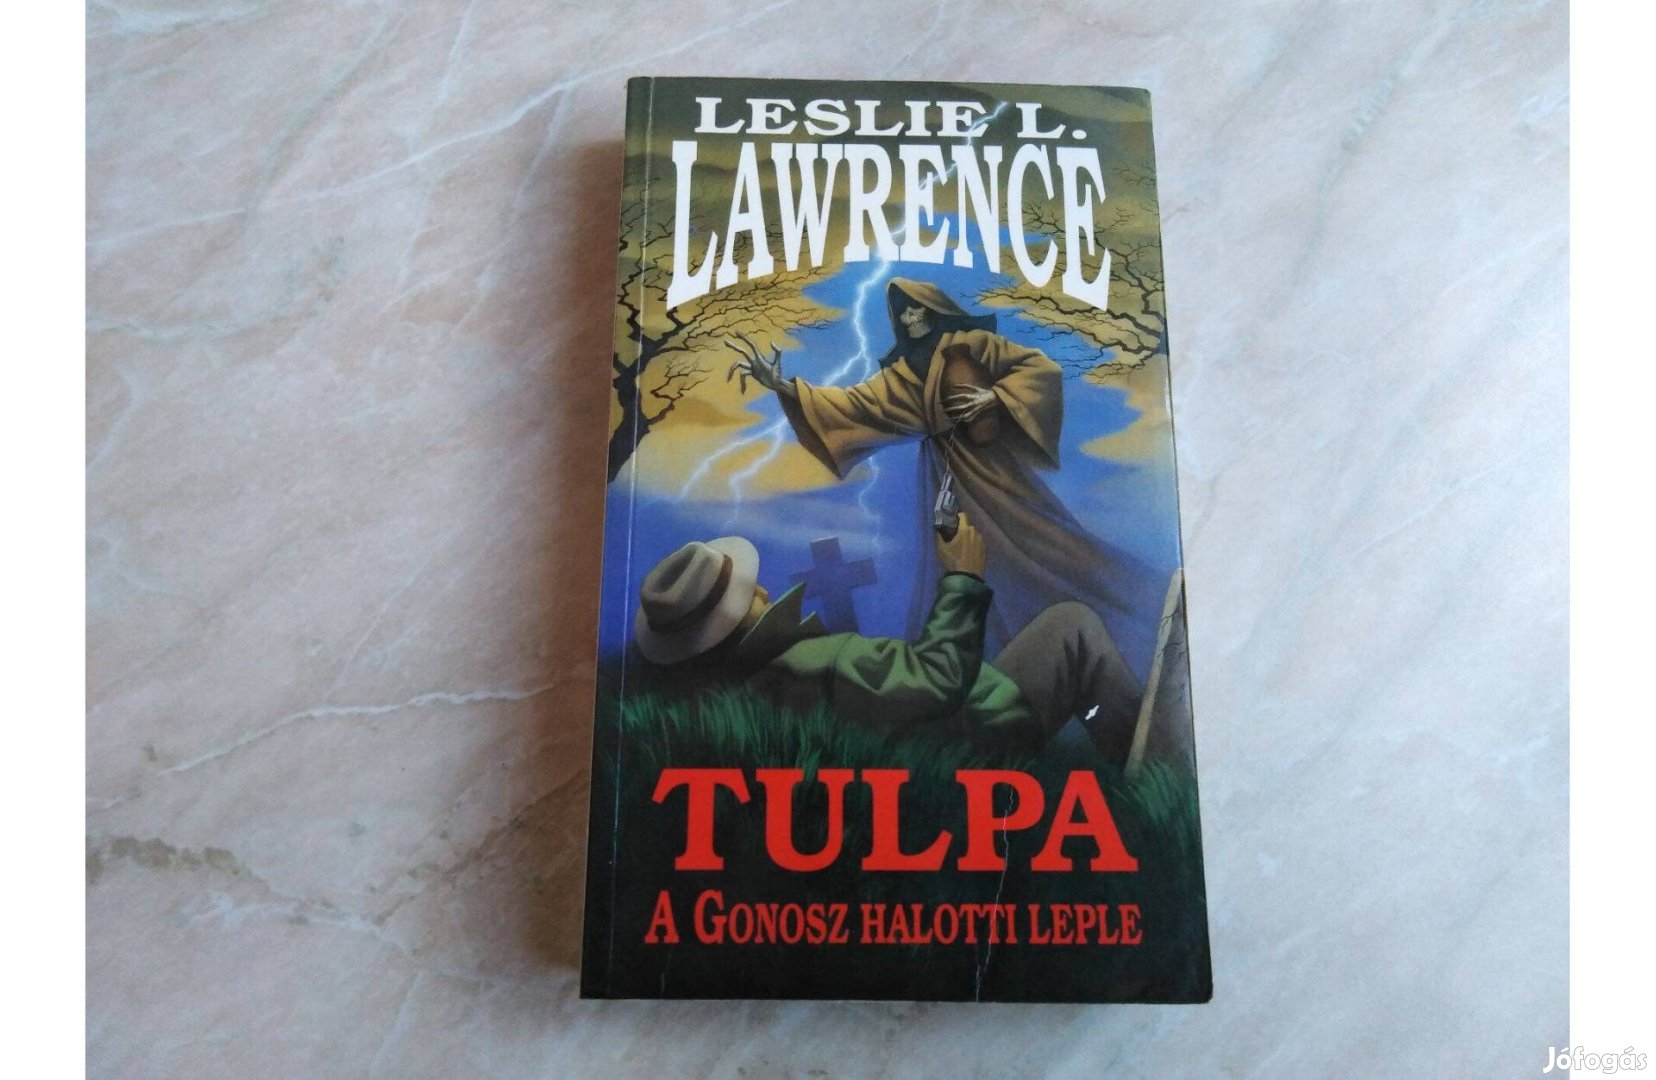 Tulpa - A Gonosz halotti leple - Leslie L. Lawrence